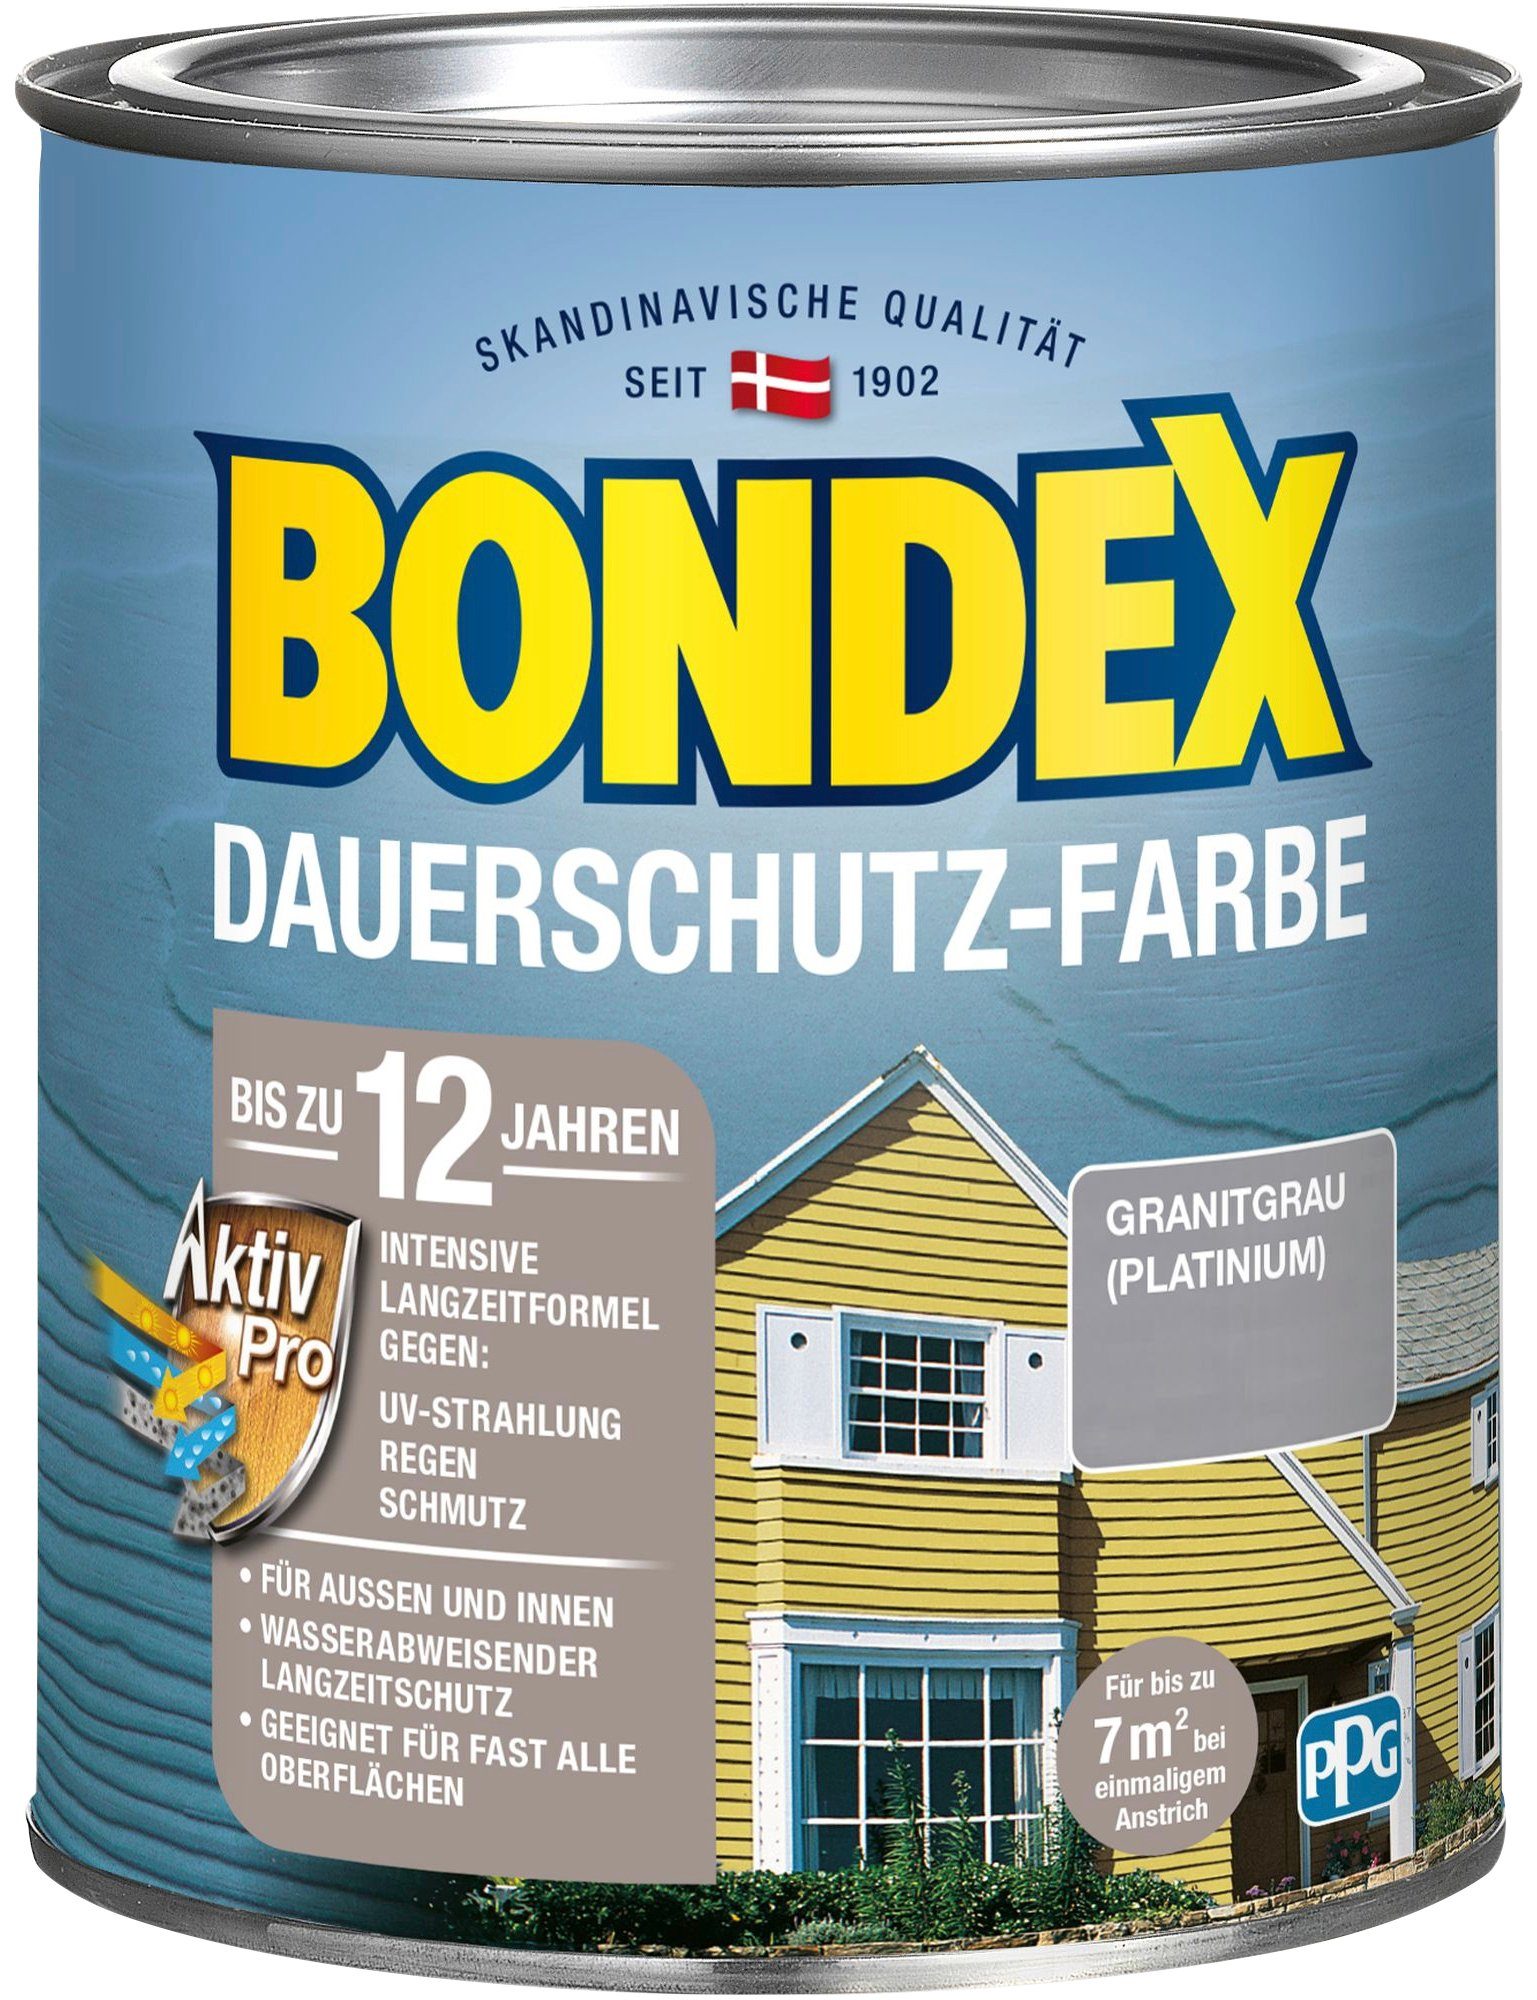 Außen für DAUERSCHUTZ-FARBE, grau Bondex Langzeitformel Wetterschutz Wetterschutzfarbe mit Aktiv Pro und Innen,